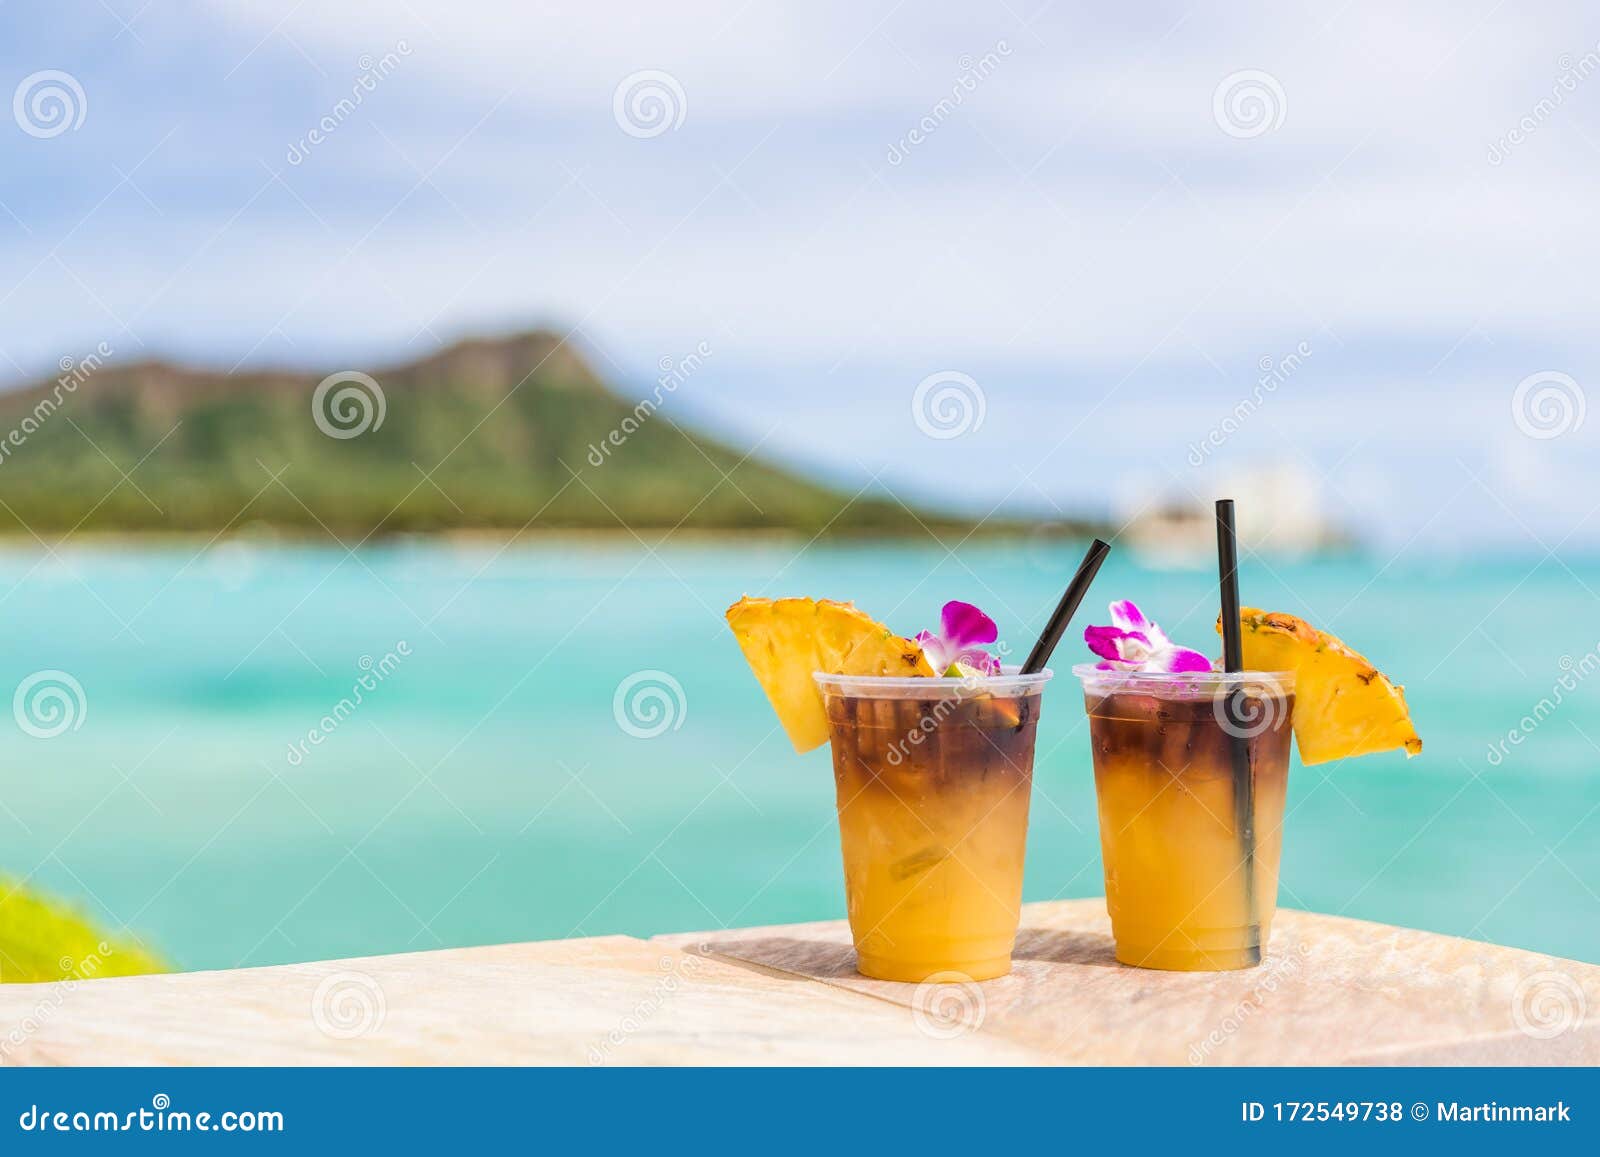 Hawaii Mai Tai Drinks on Waikiki Beach Bar Travel Vacation in Honolulu, Hawaii